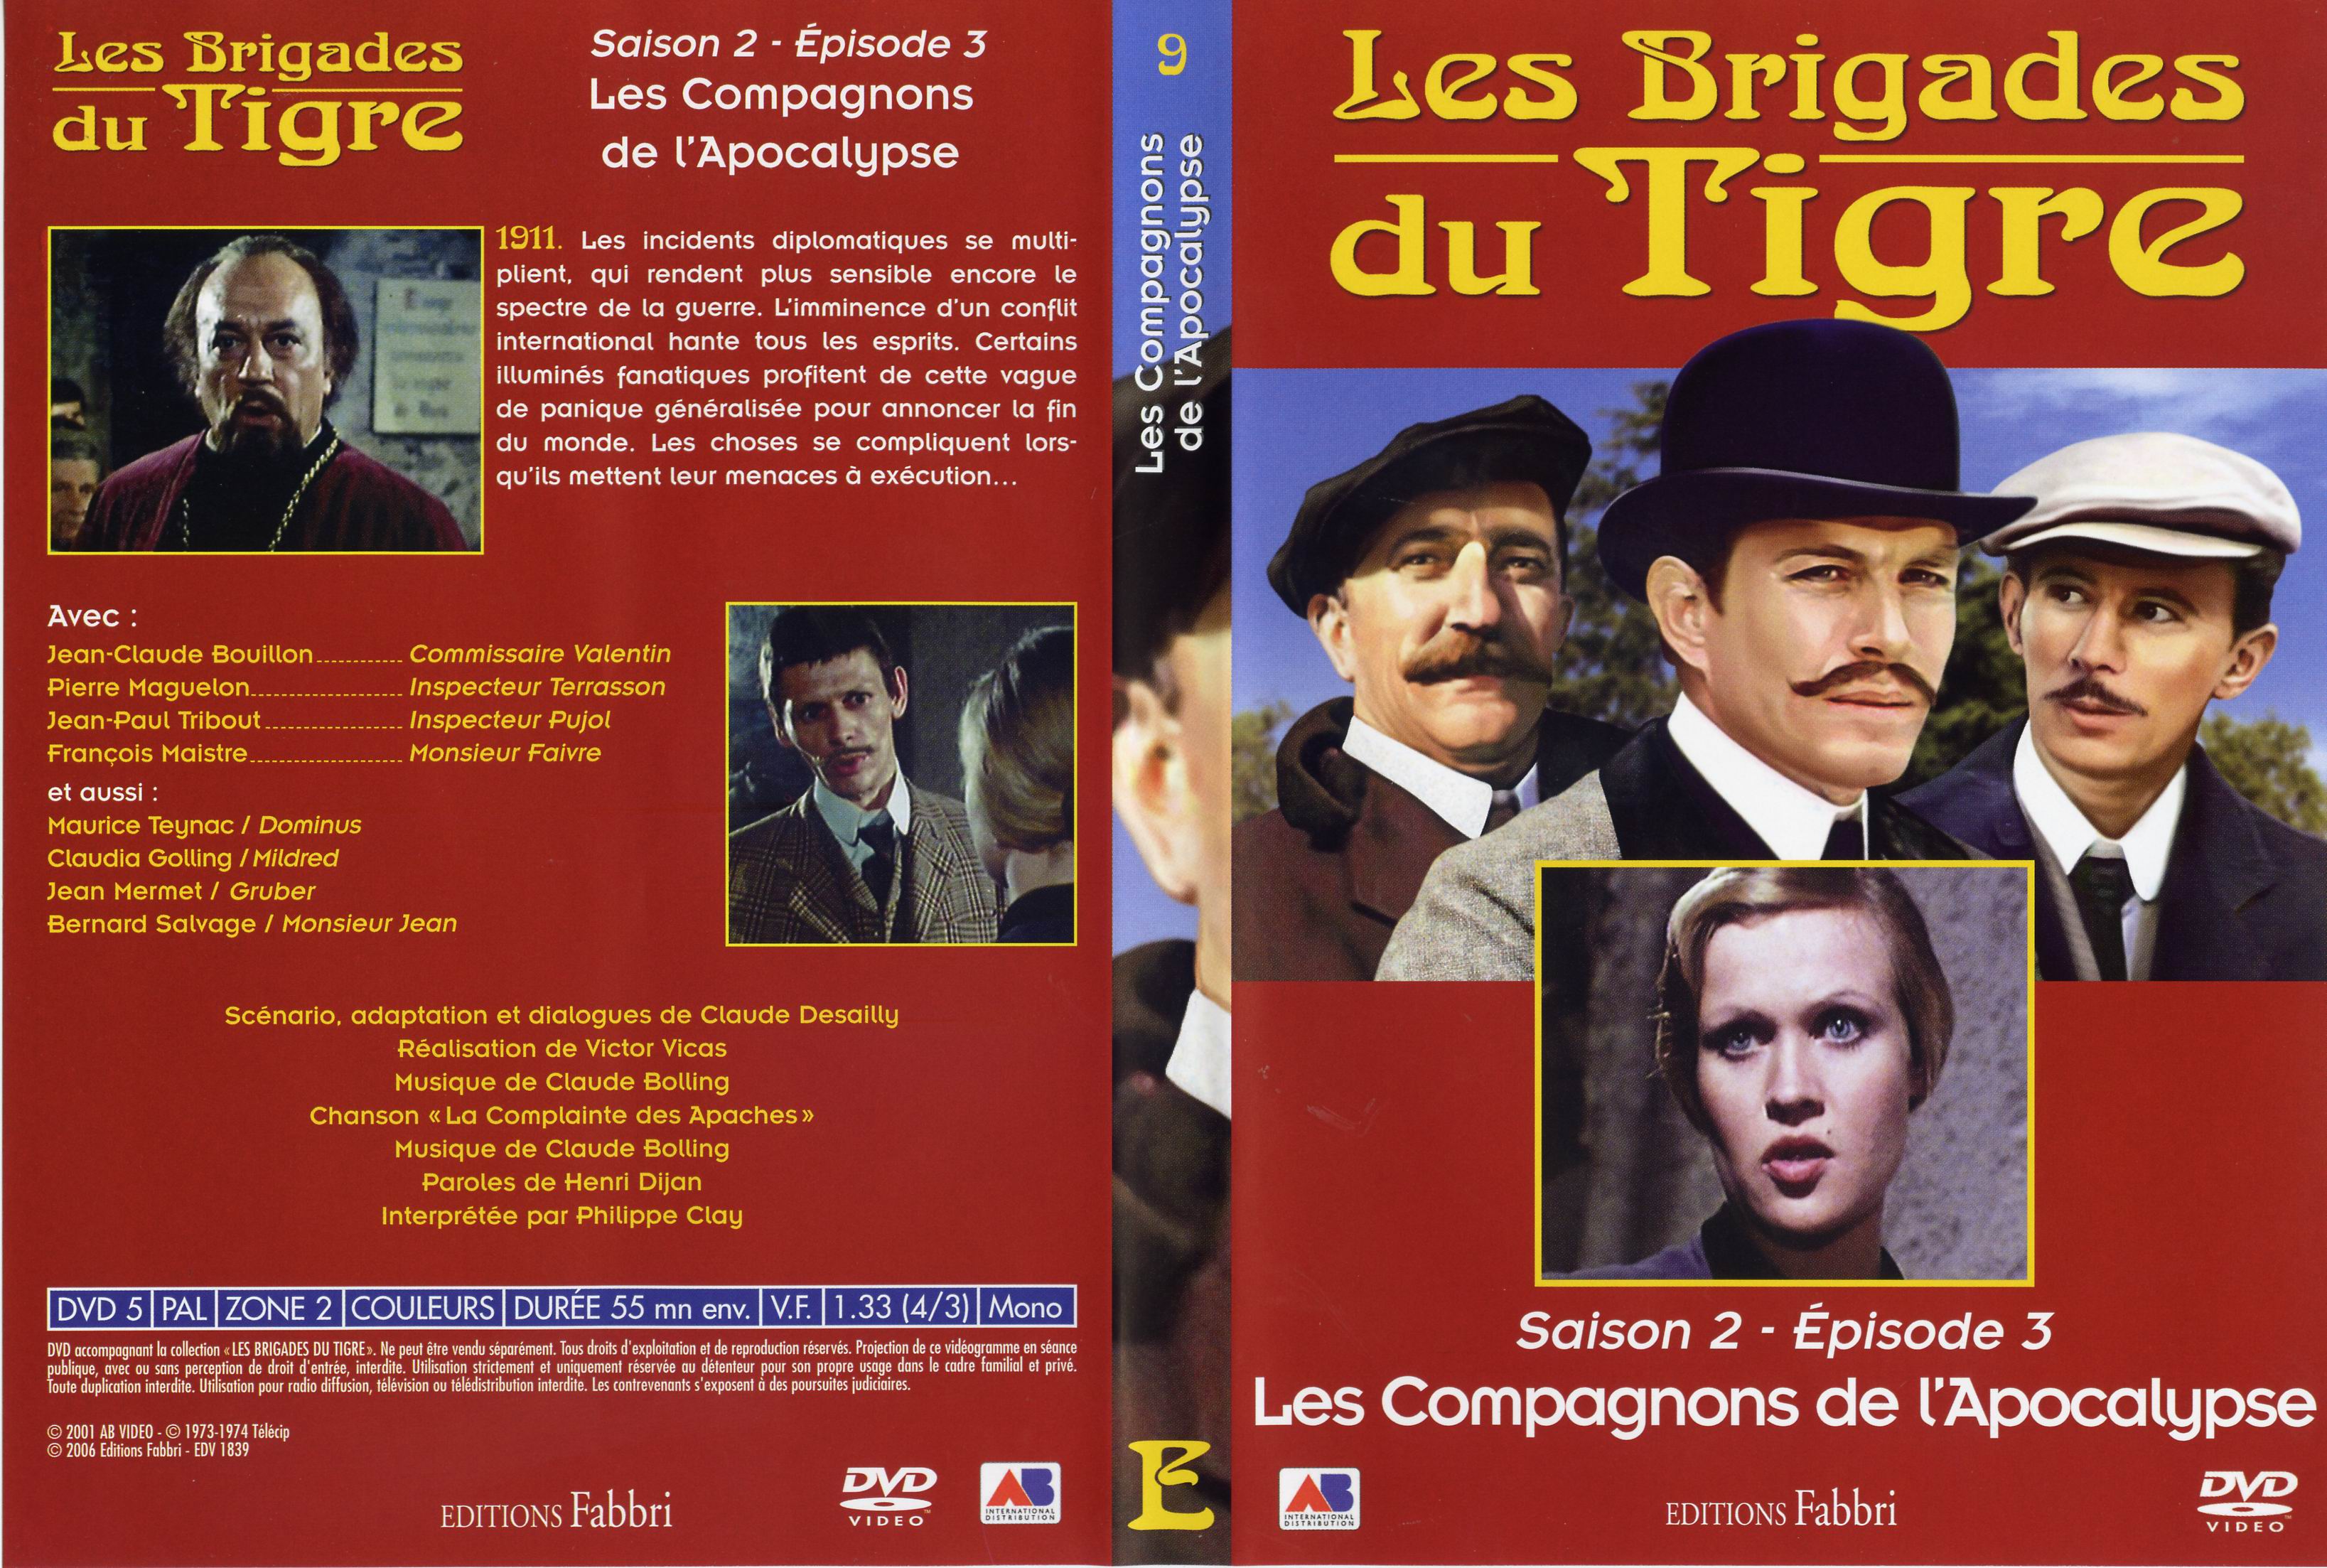 Jaquette DVD Les brigades du tigre saison 2 pisode 3